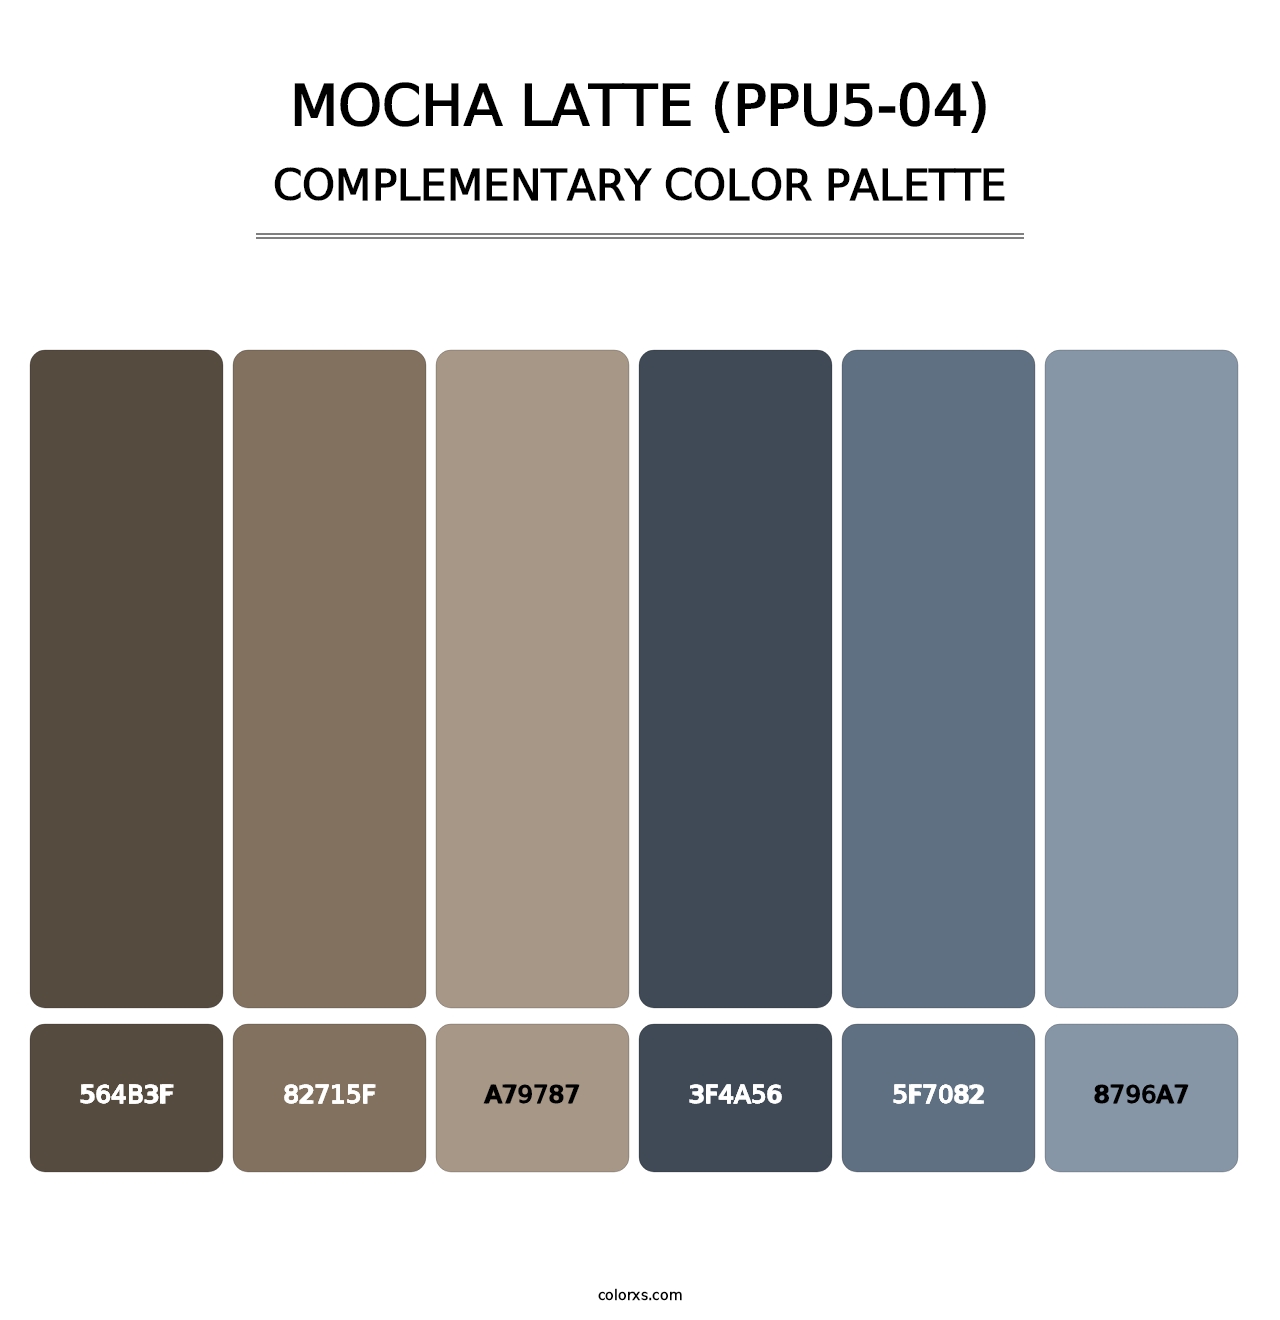 Mocha Latte (PPU5-04) - Complementary Color Palette